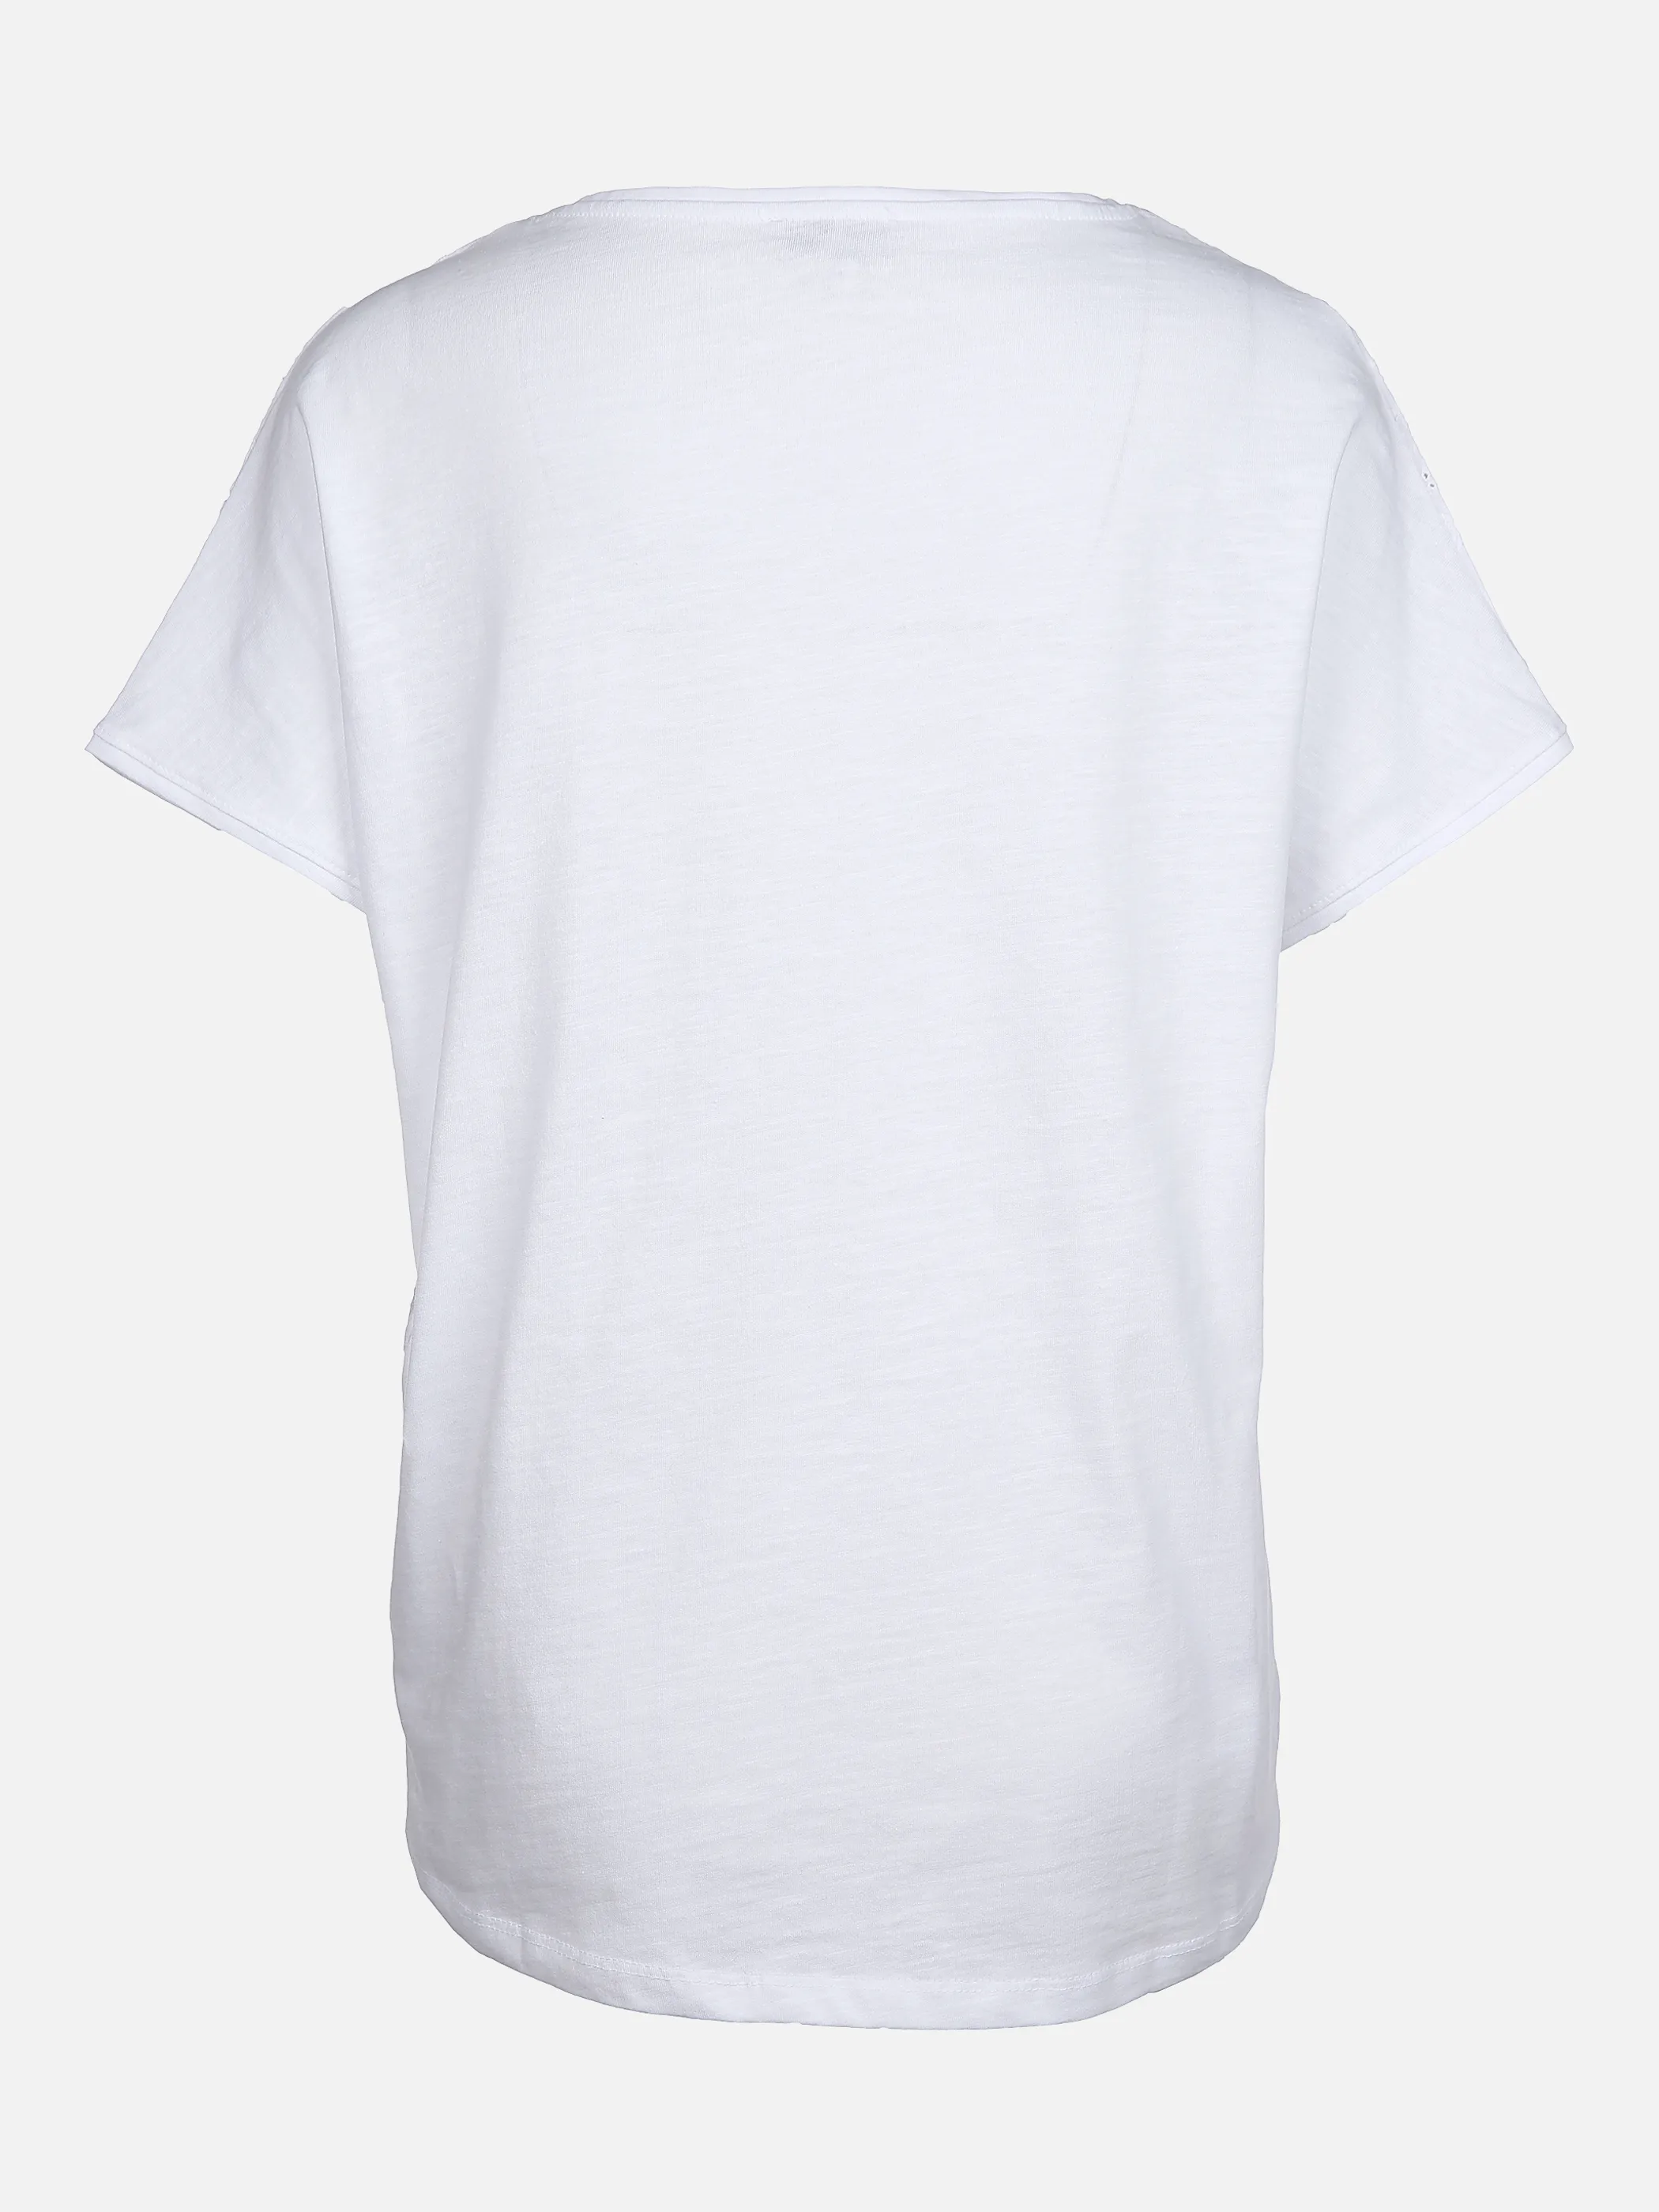 Lisa Tossa Da-Shirt m. übergroßer Schulte Weiß 862439 WEIß 2